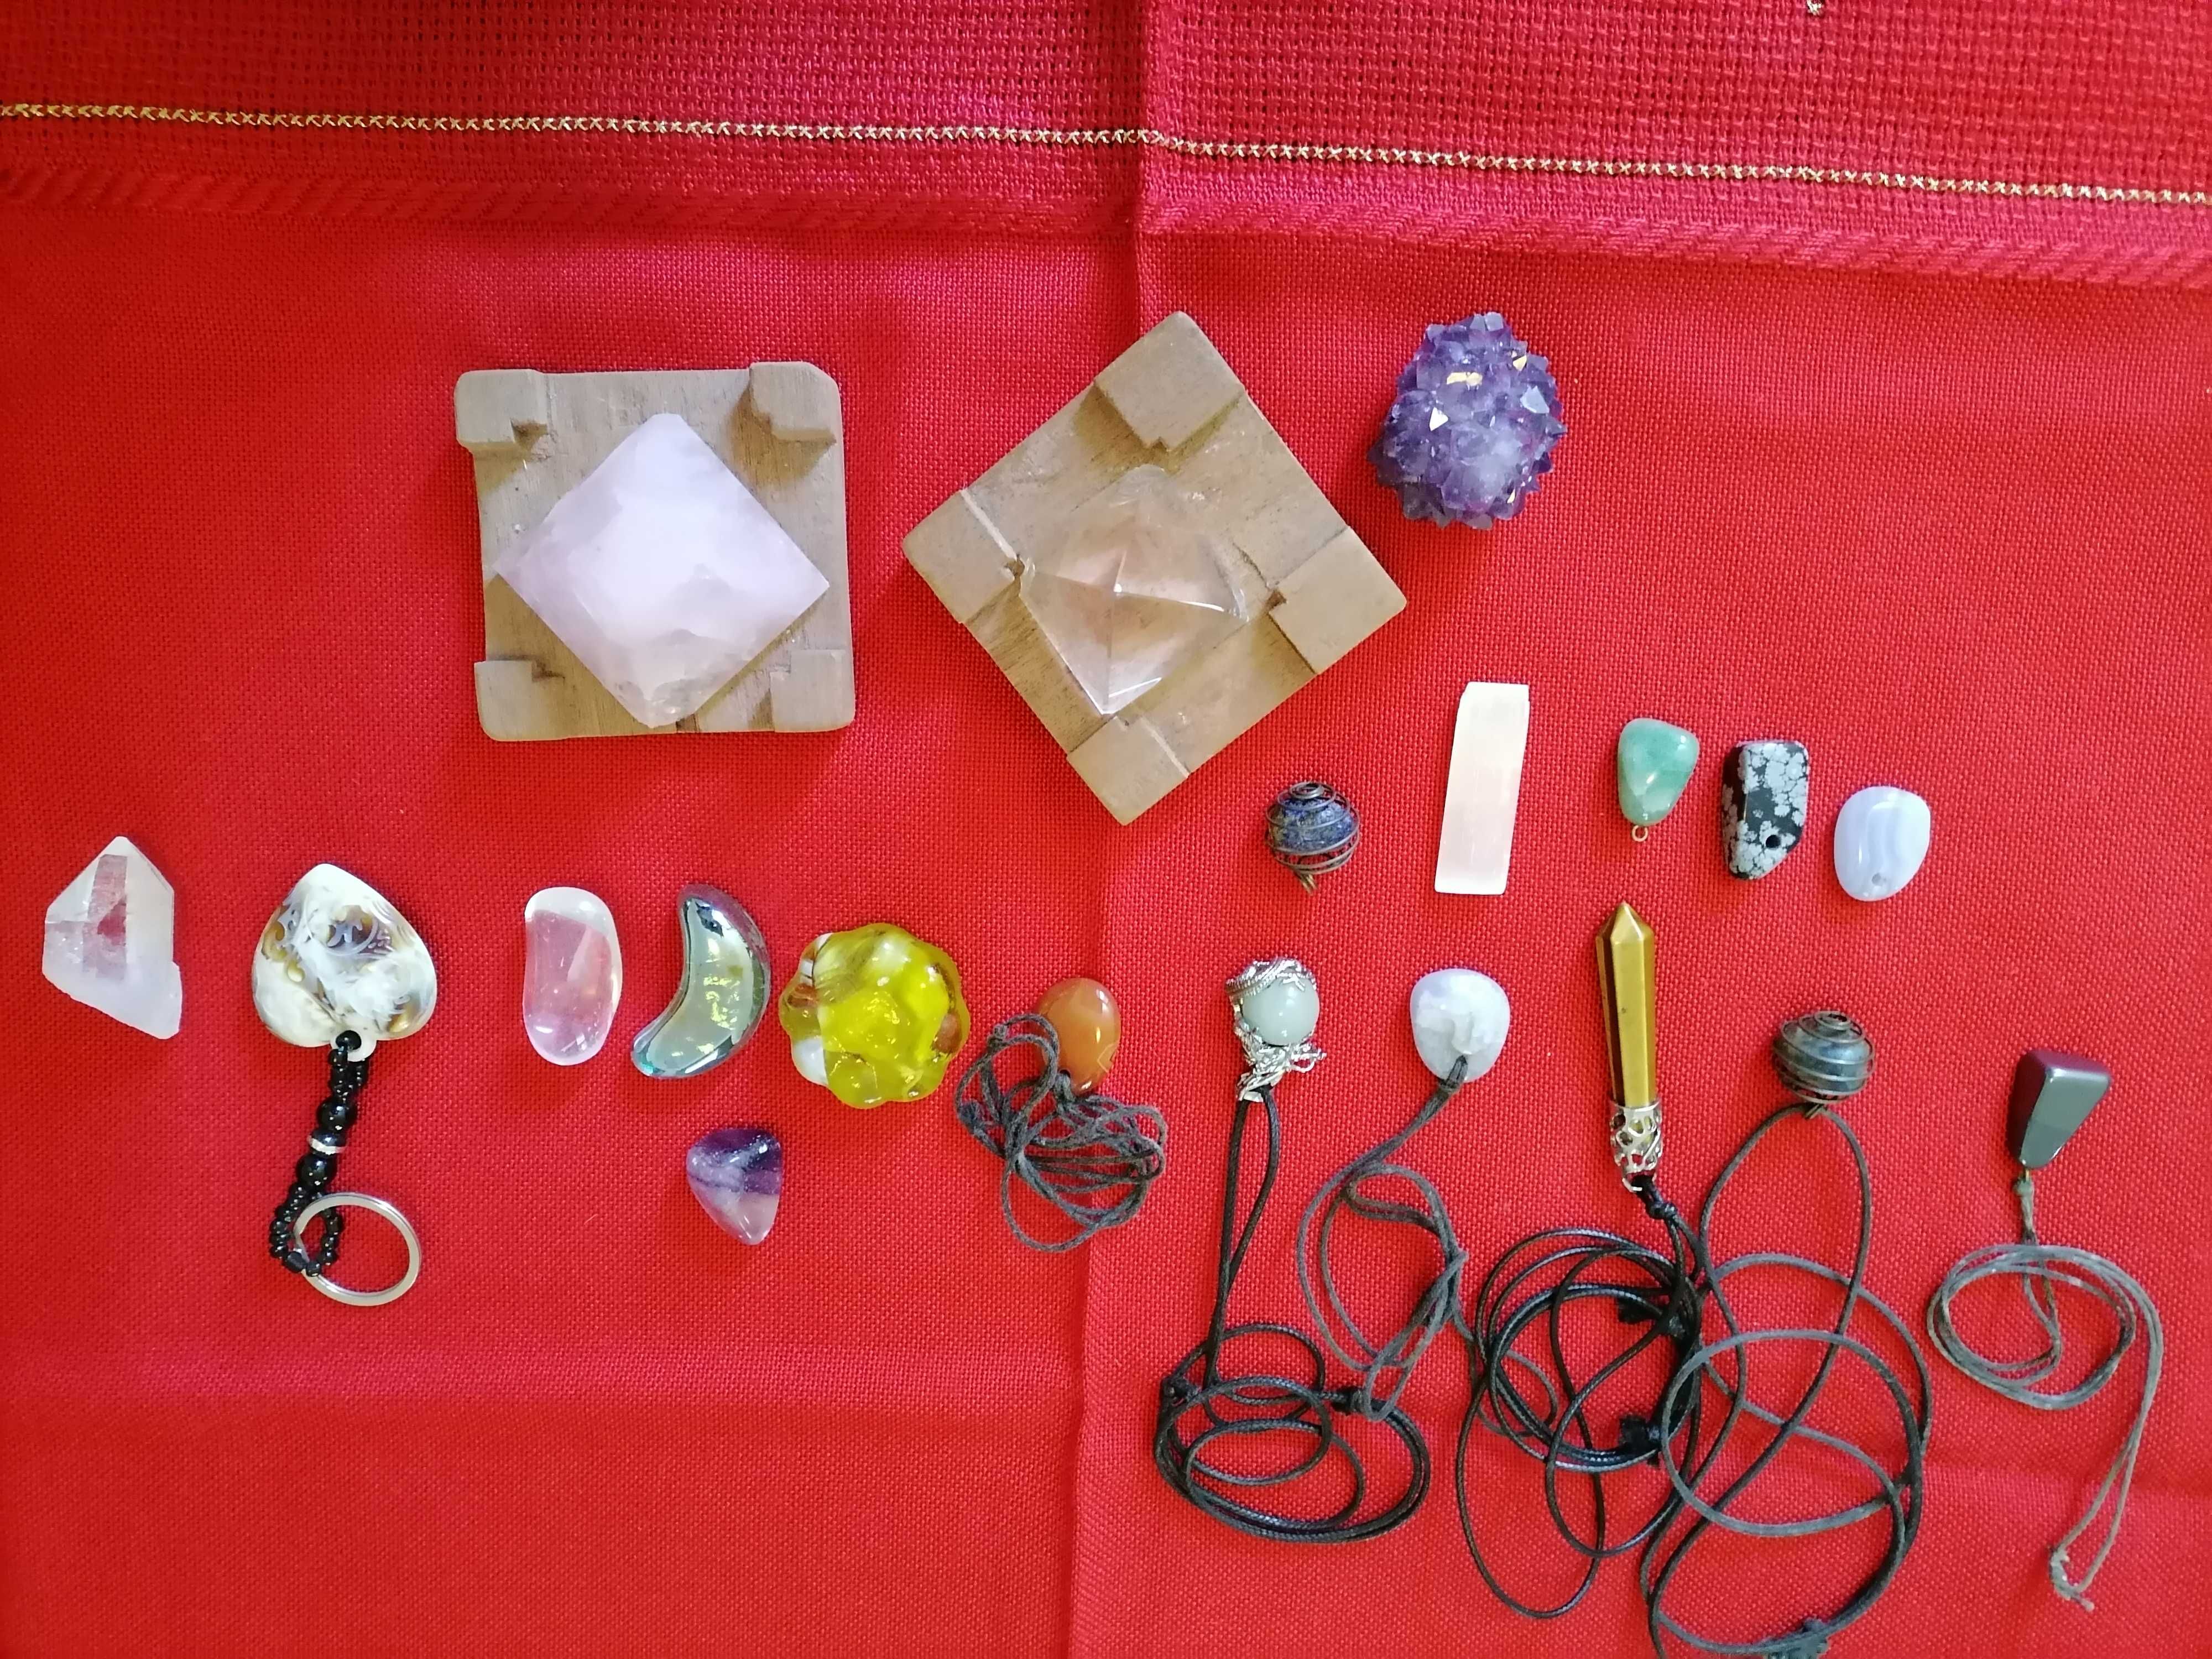 Pedras naturais/minerais vários tipos